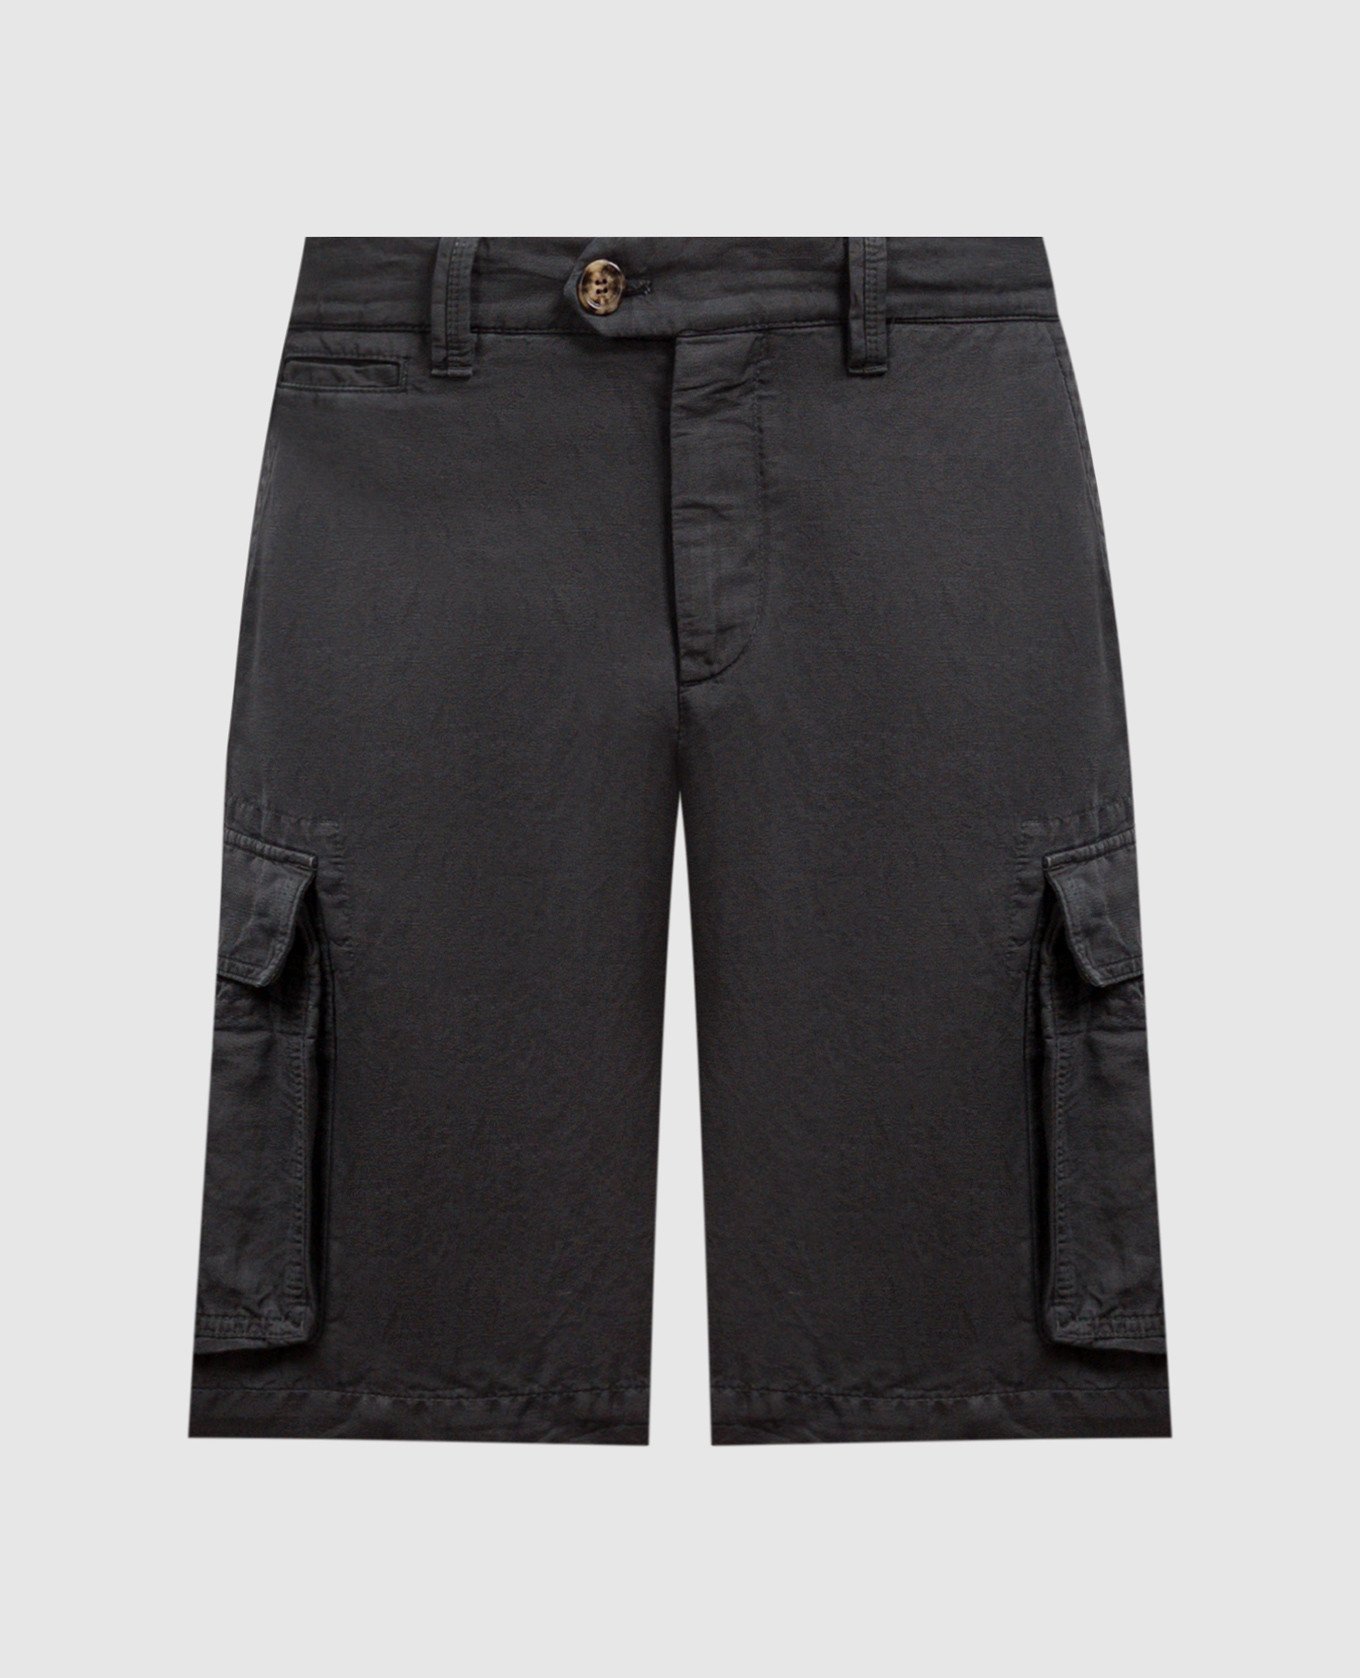 Gray linen cargo shorts